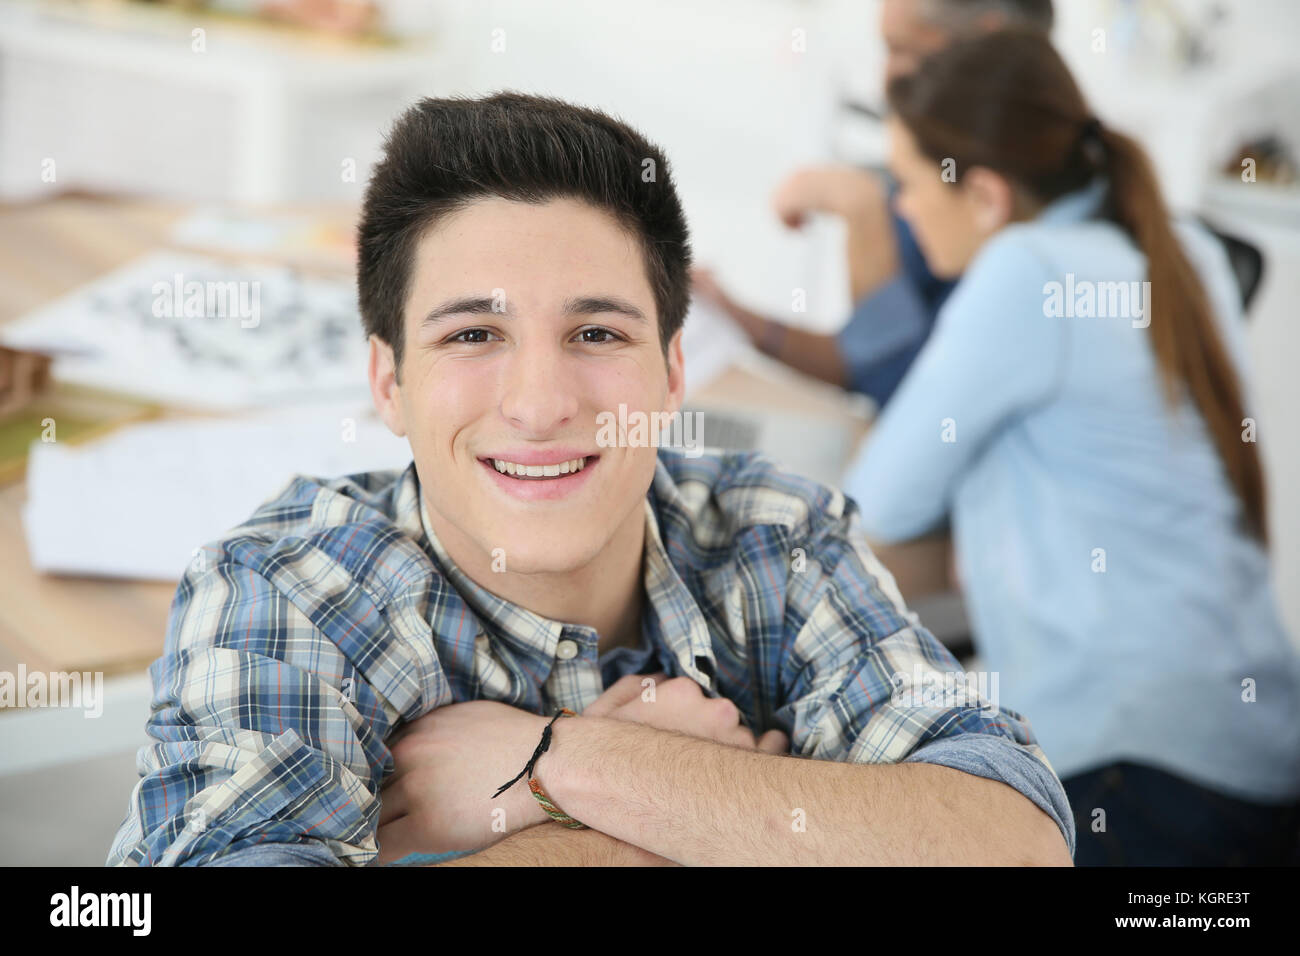 Portrait von College boy der Teilnahme am Kurs Stockfoto